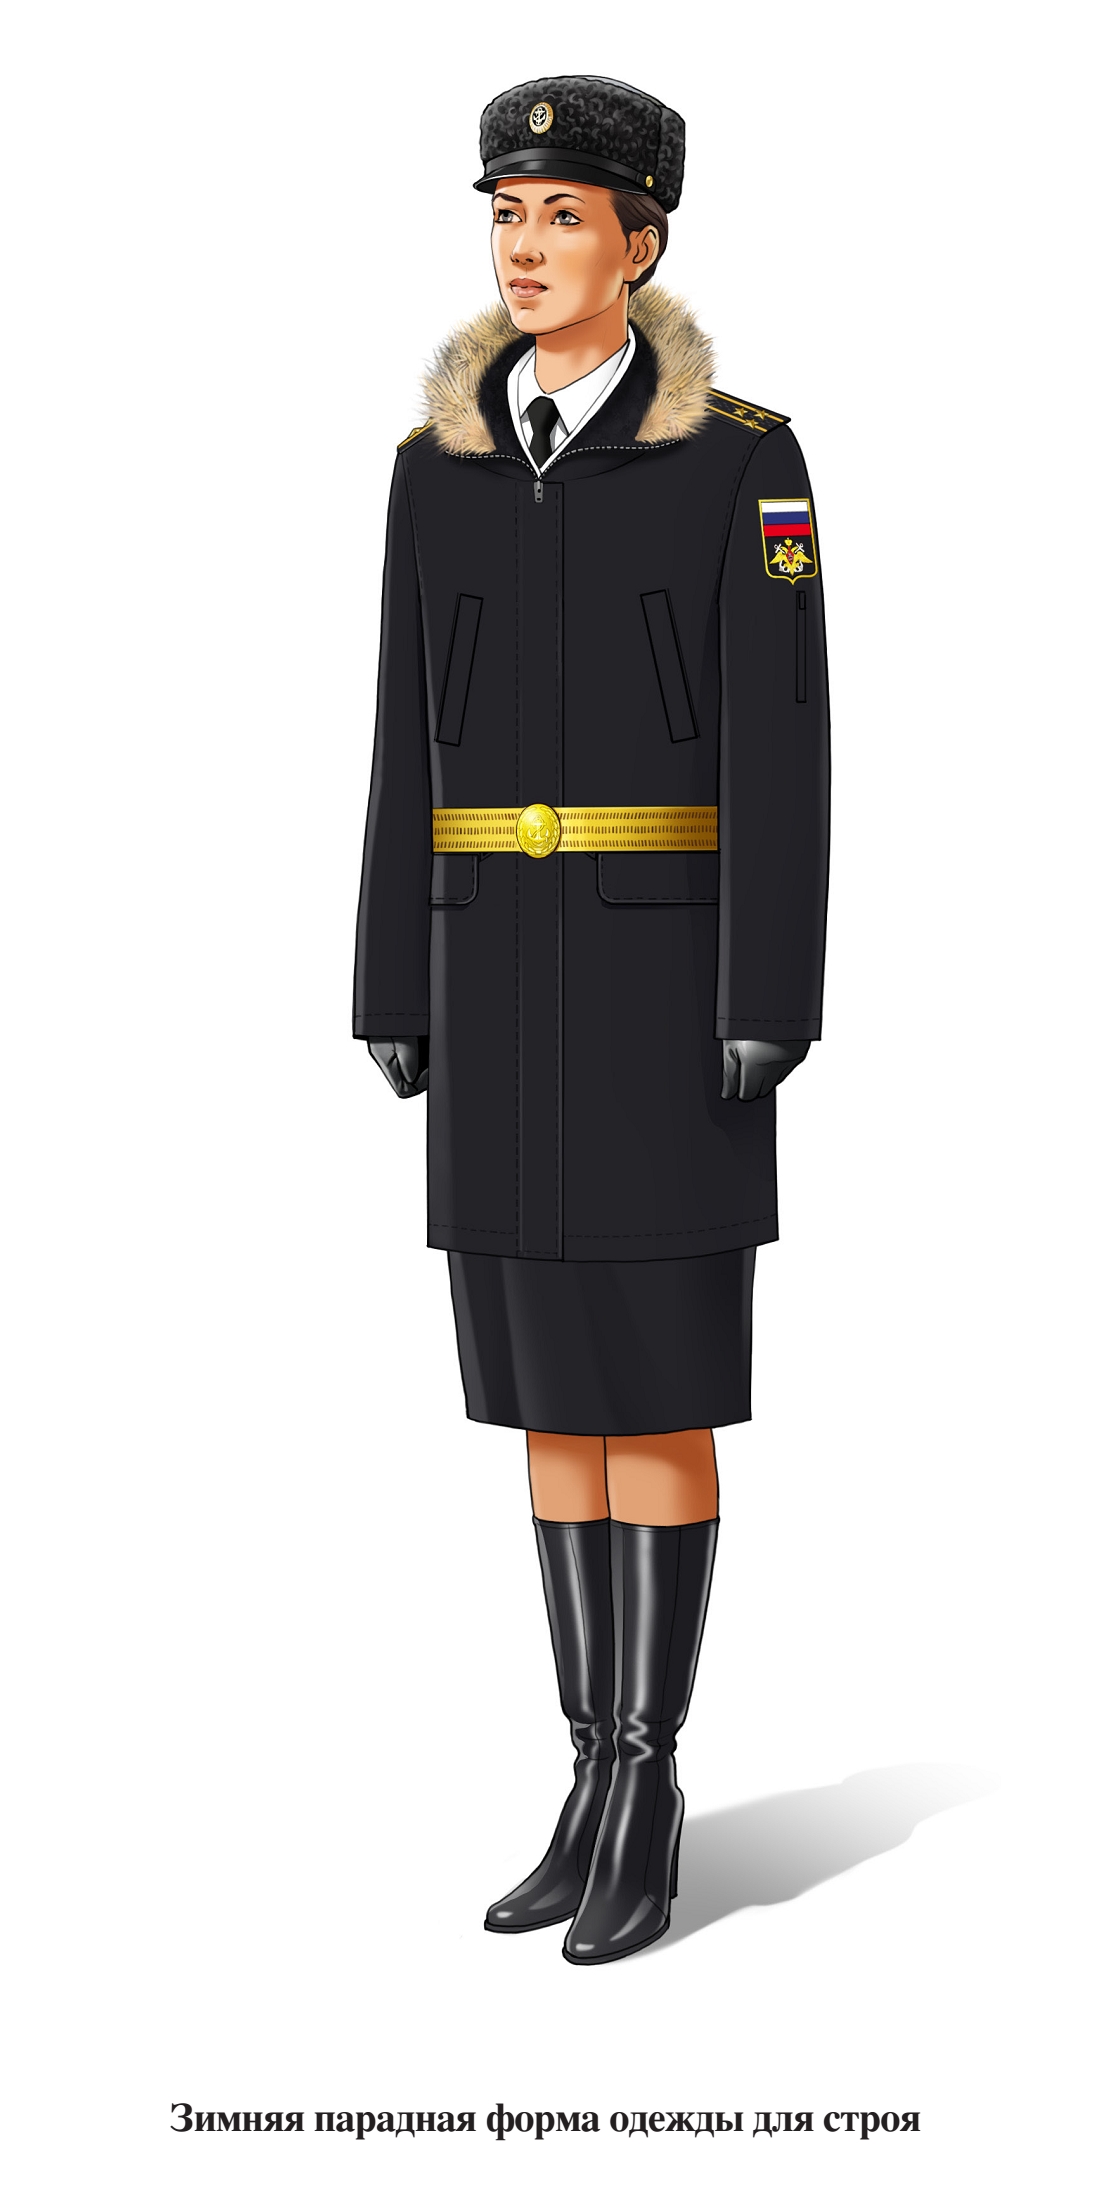 Зимняя парадная форма военнослужащих женского пола ВМФ для строя